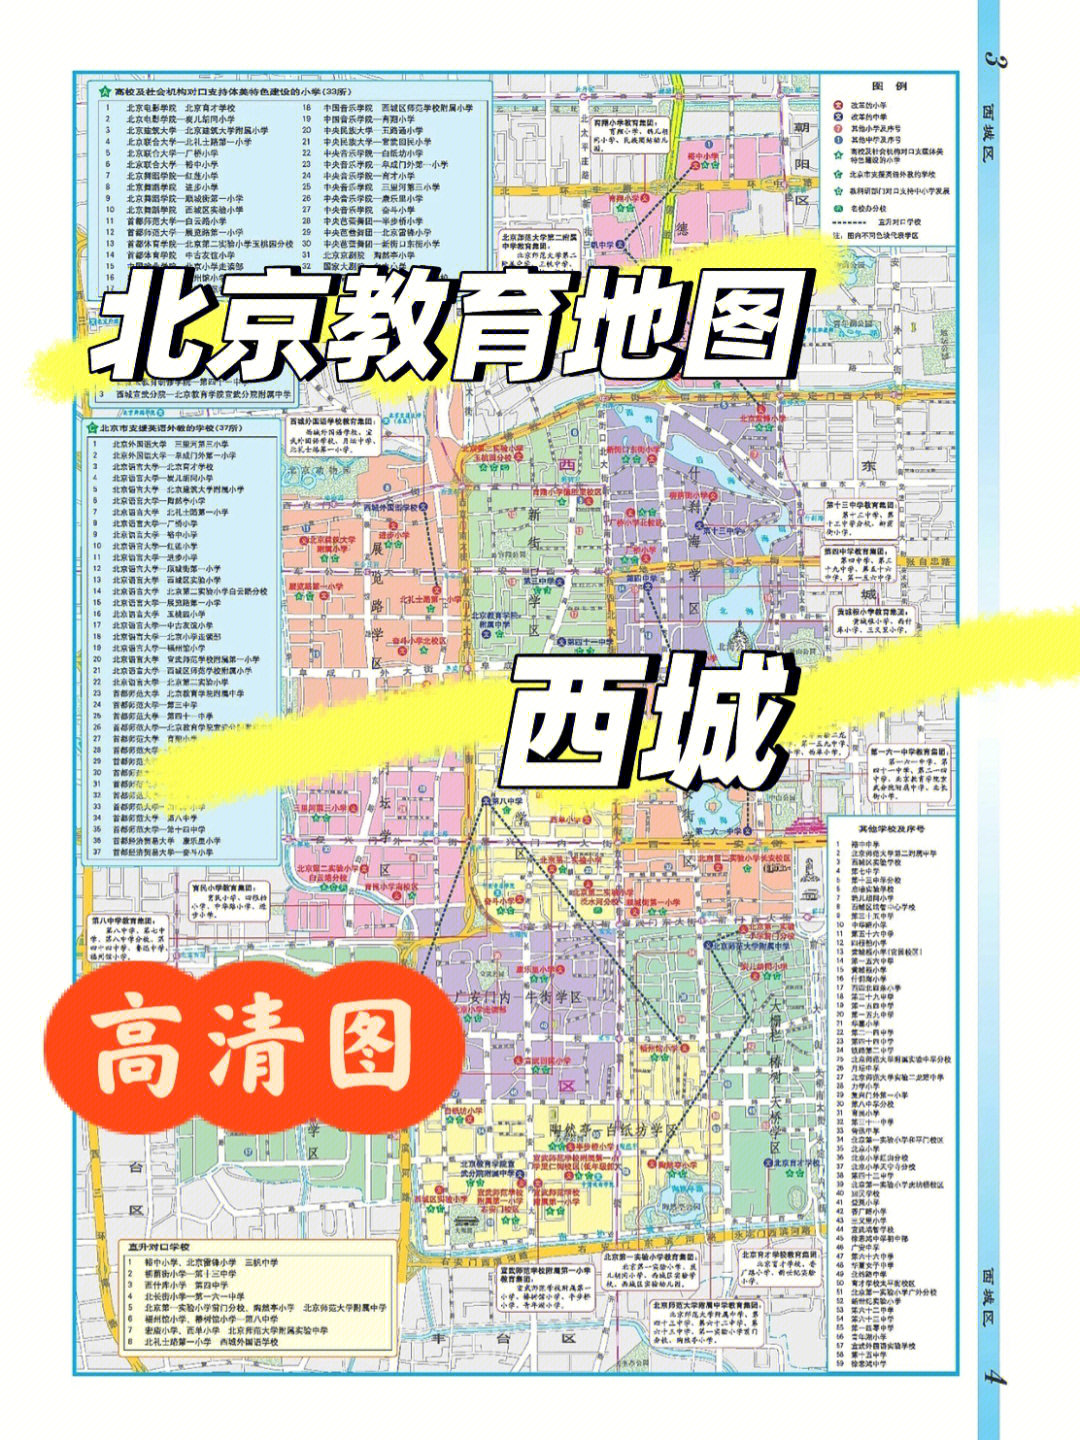 北京学区地图大全高清图快收藏起来